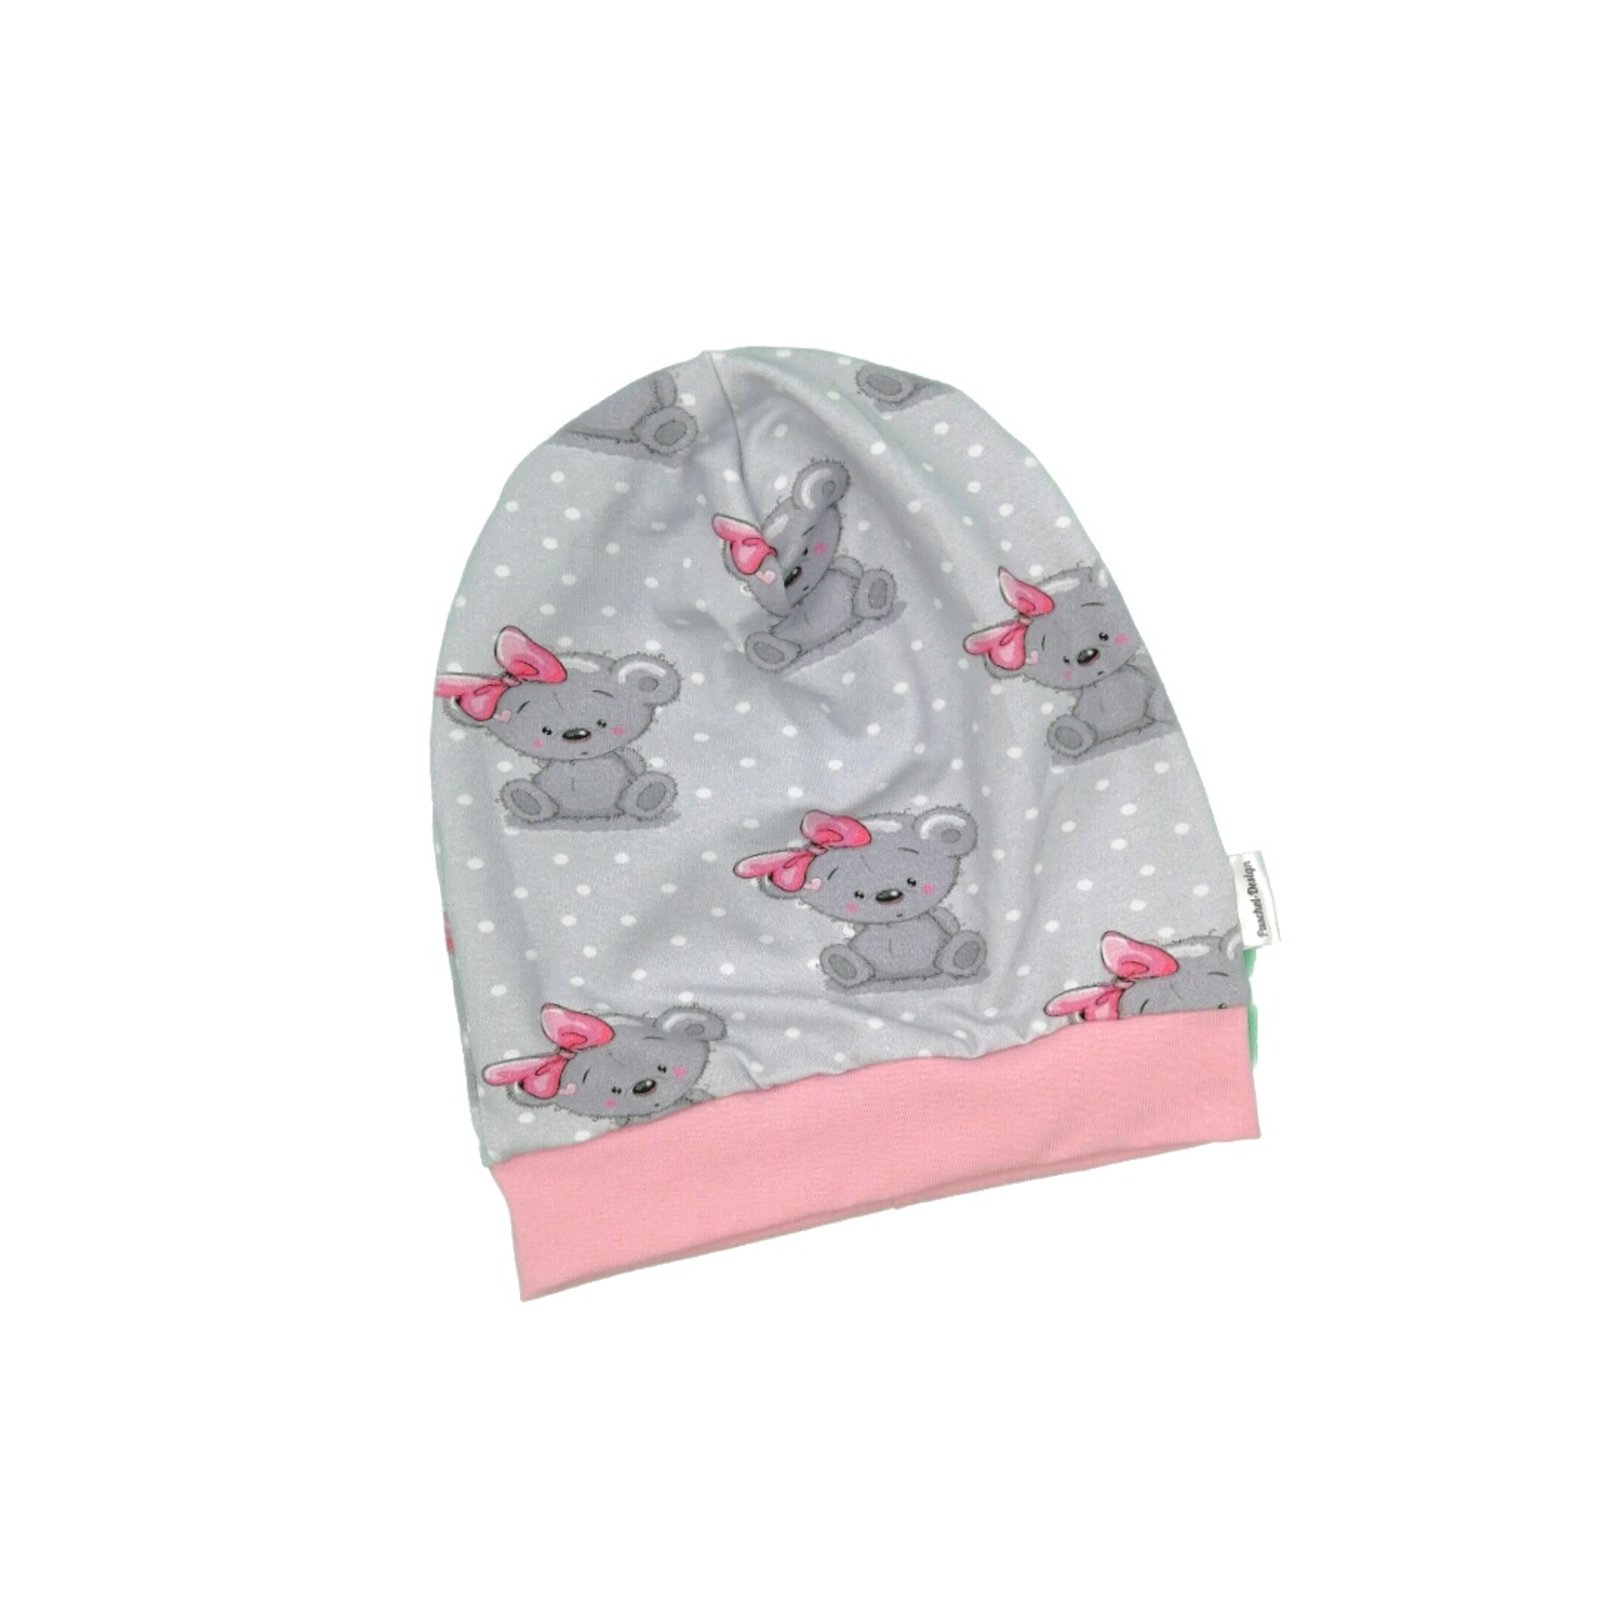 Baby Kinder Beanie Mütze Mädchen Elefant Girl weiß rosa KU 34-54 cm handmade Puschel-Design 